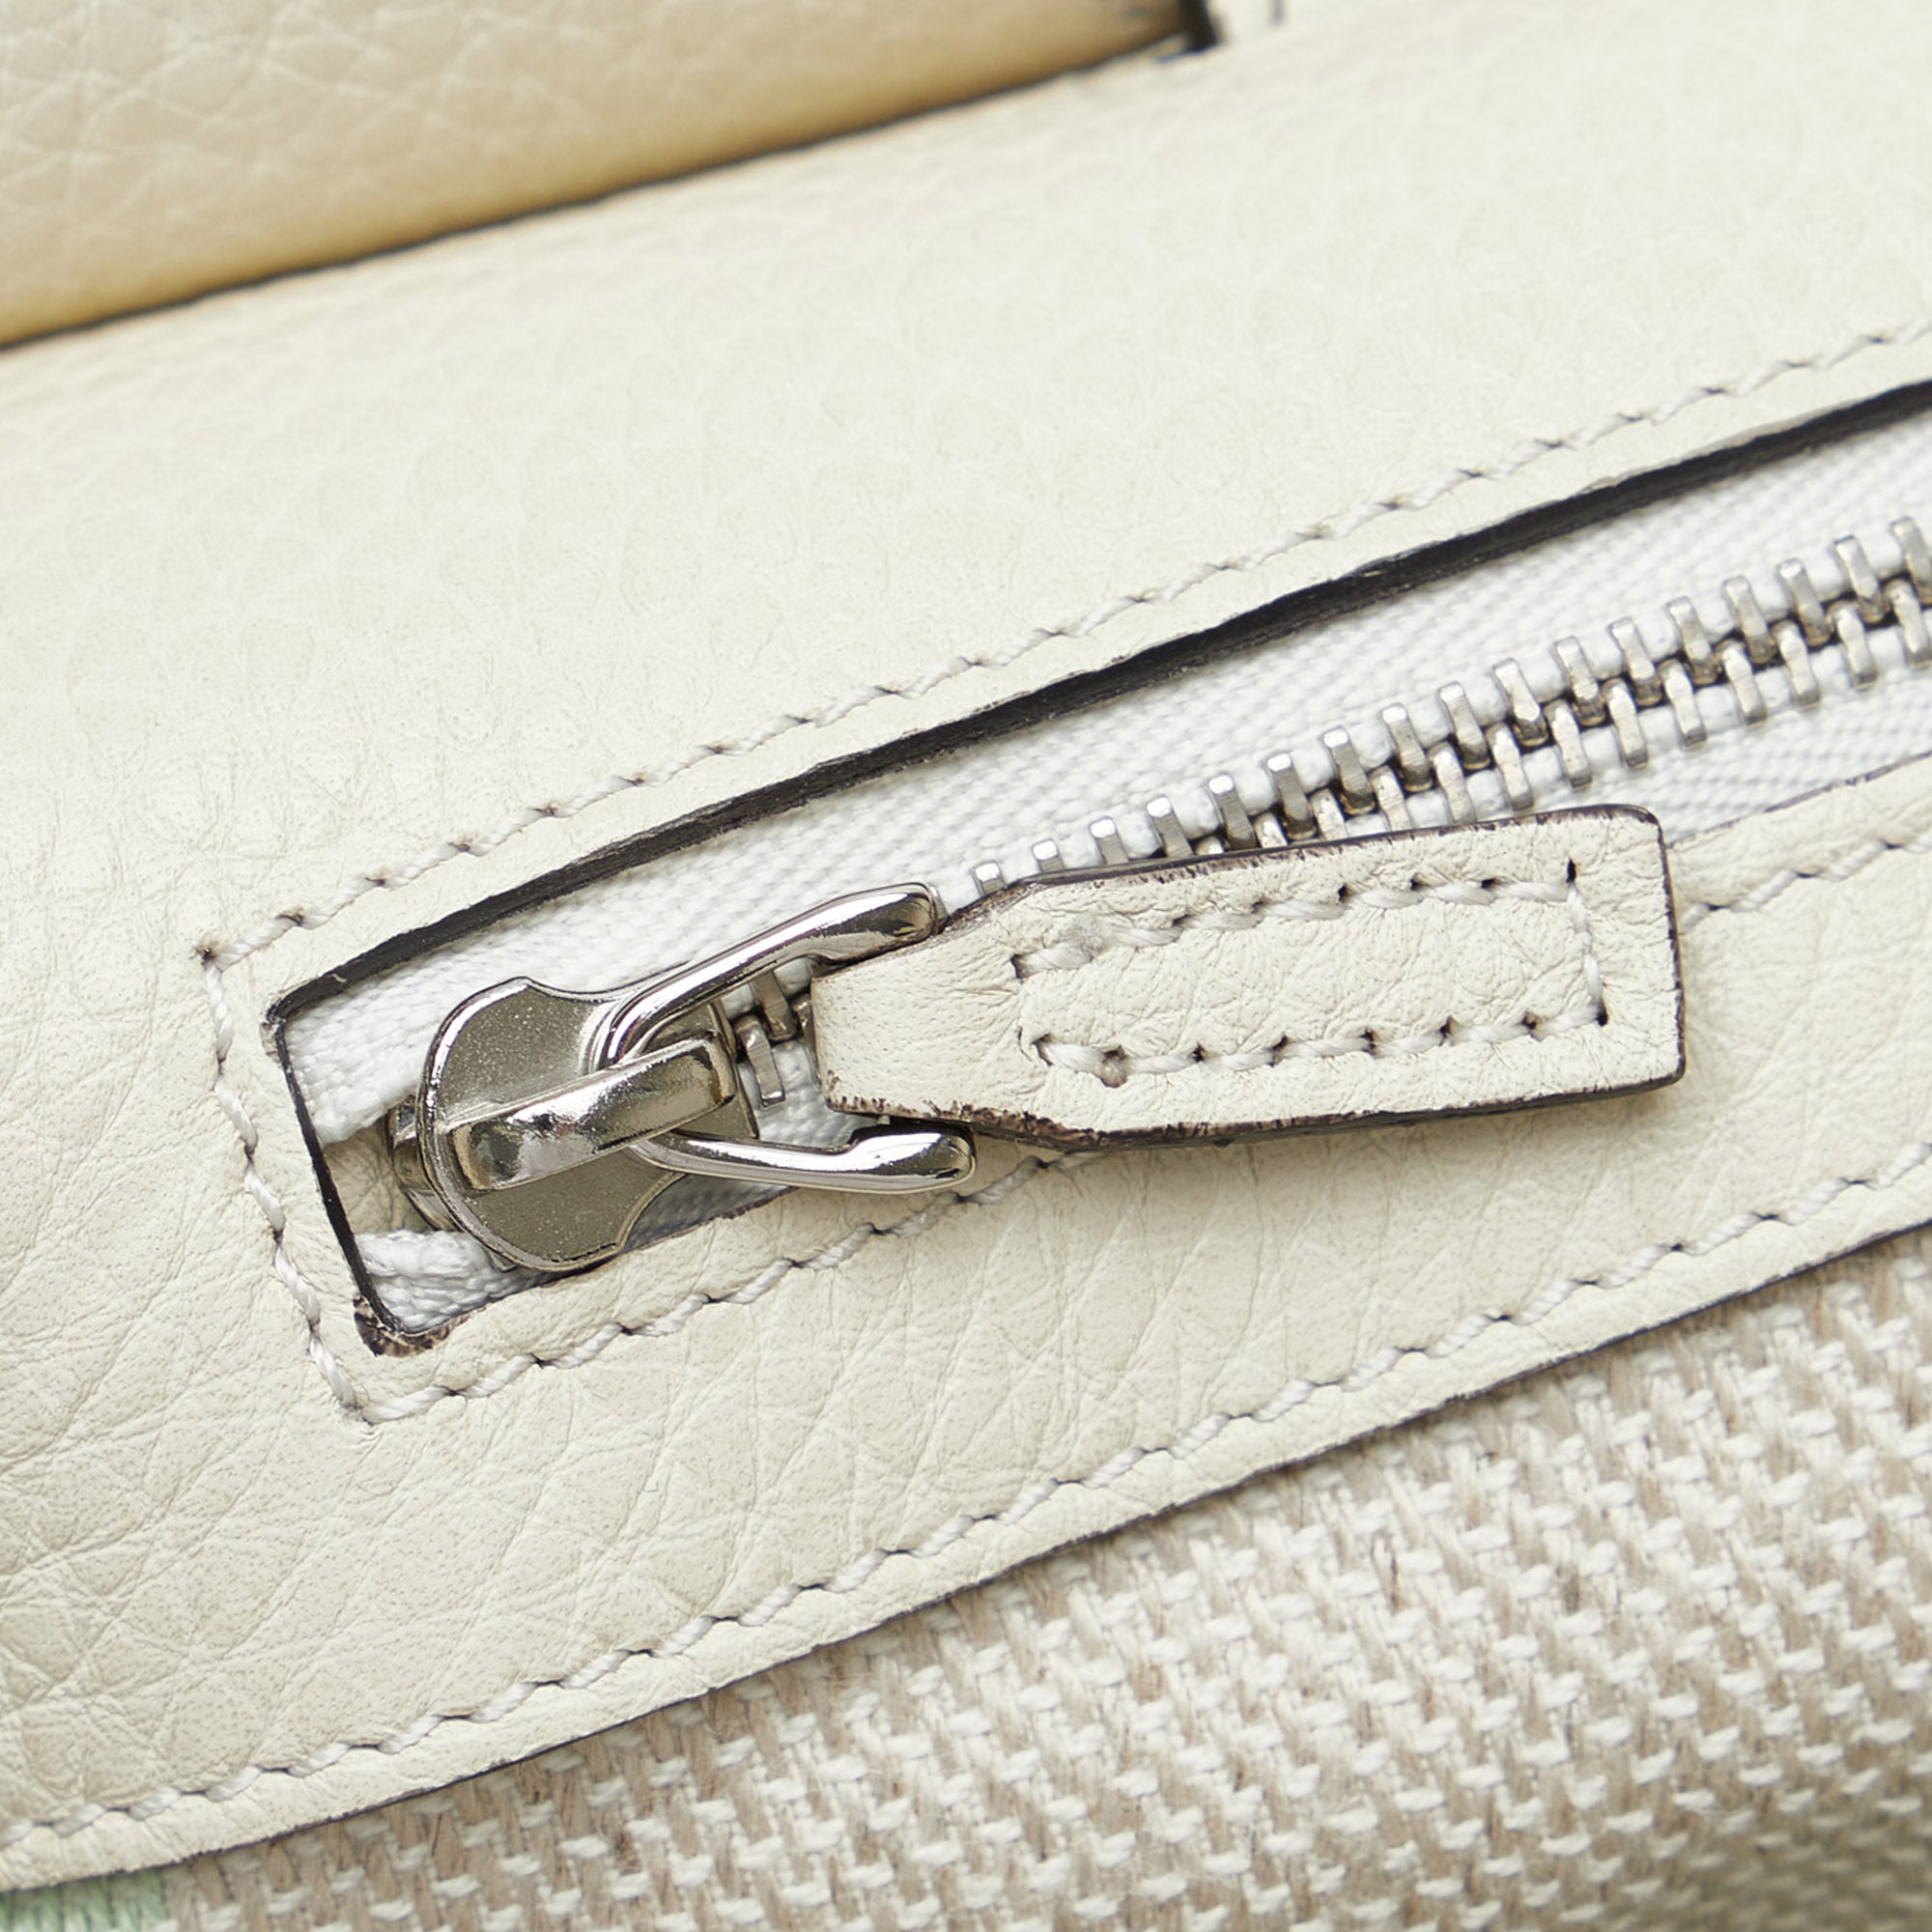 Gucci Bamboo Daily Handbag Medium White